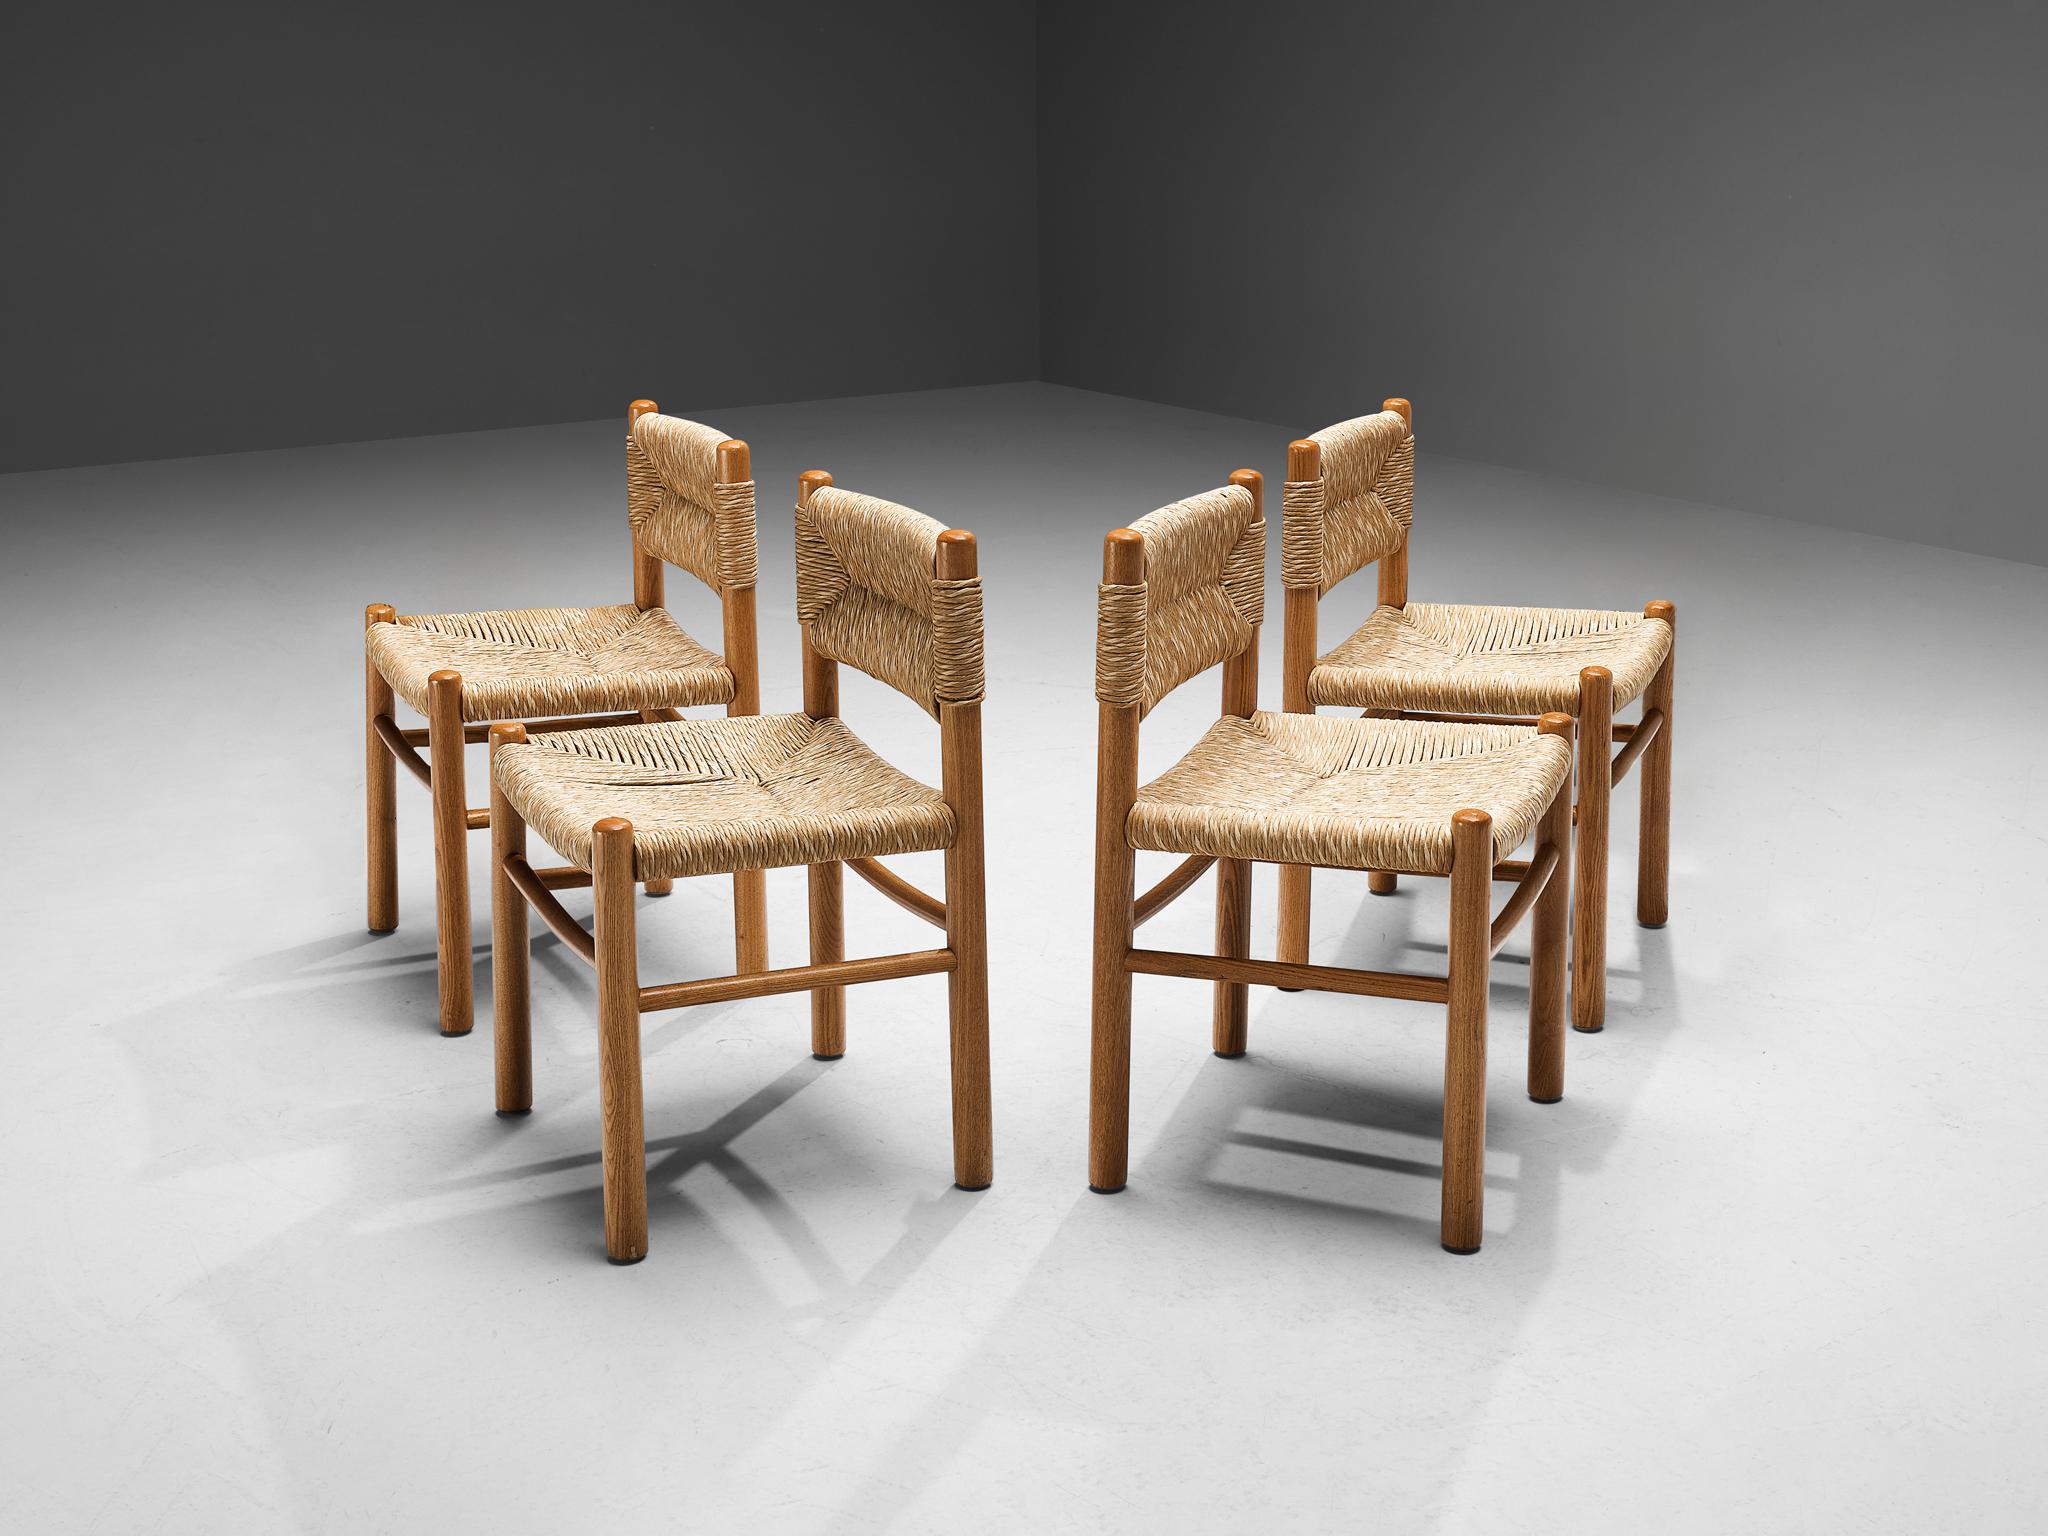 Satz von vier Esszimmerstühlen, Eiche, Stroh, Frankreich, 1960er Jahre.

Das Gestell dieser Esszimmerstühle besteht aus massivem Holz und zylindrischen, dicken Beinen, die mit eleganten, schmalen, horizontalen Latten miteinander verbunden sind. Die